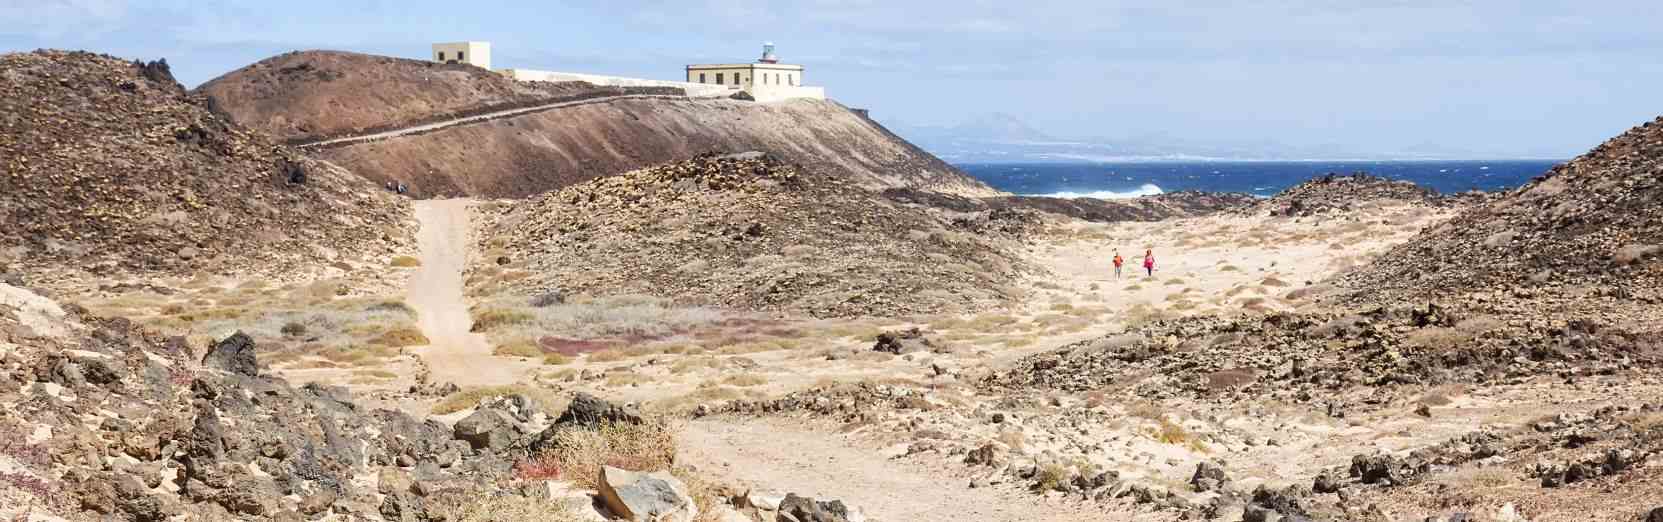 Fuerteventura Mietwagen ohne Kreditkarte